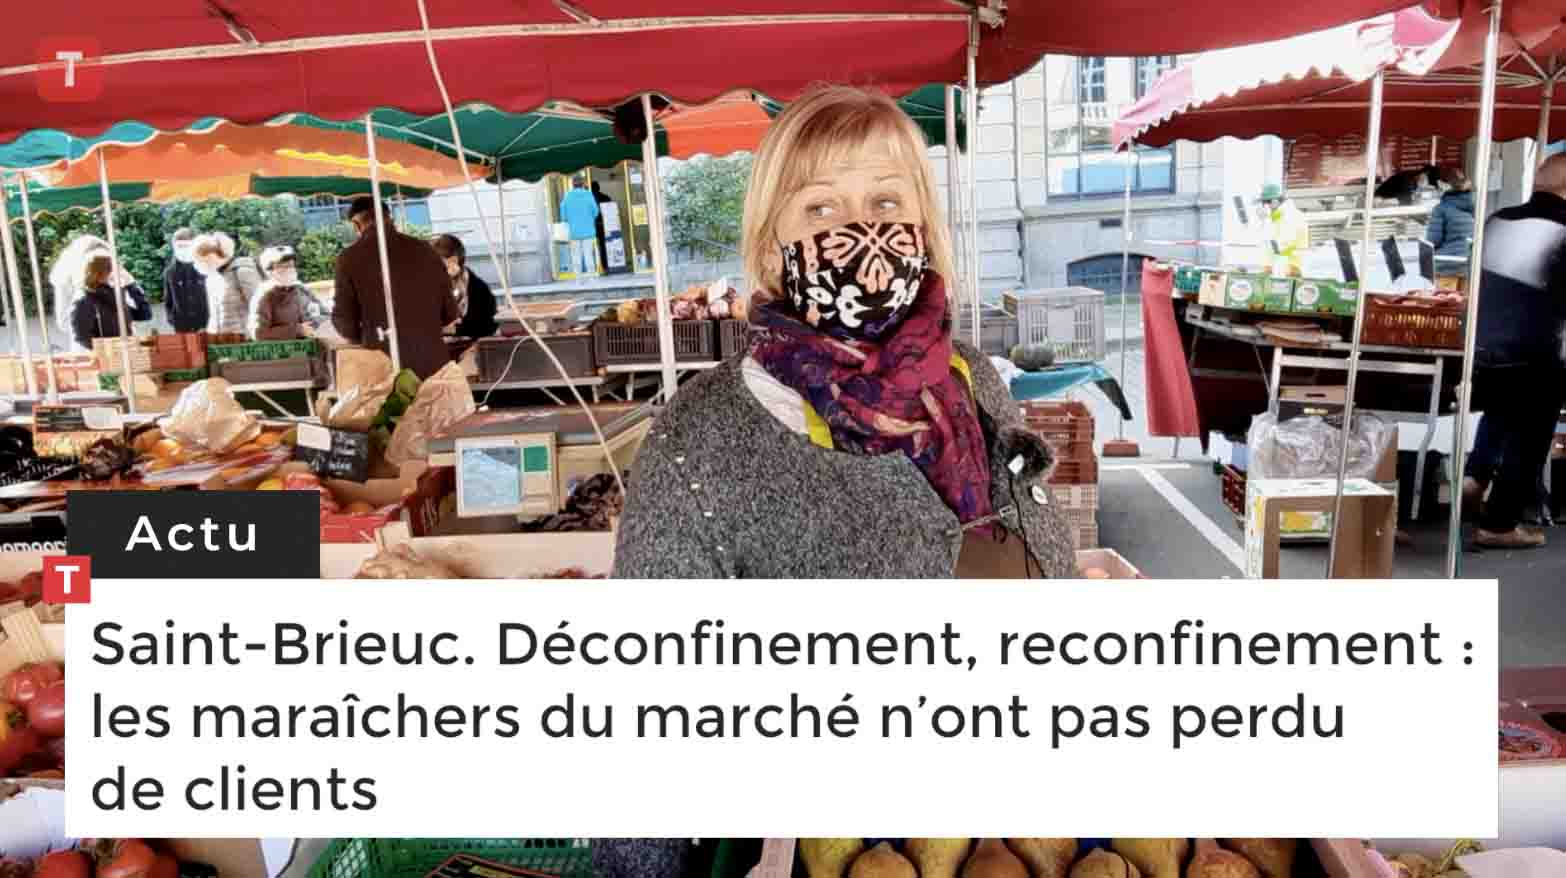 Saint-Brieuc. Déconfinement, reconfinement : les maraîchers du marché n’ont pas perdu de clients (Le Télégramme)